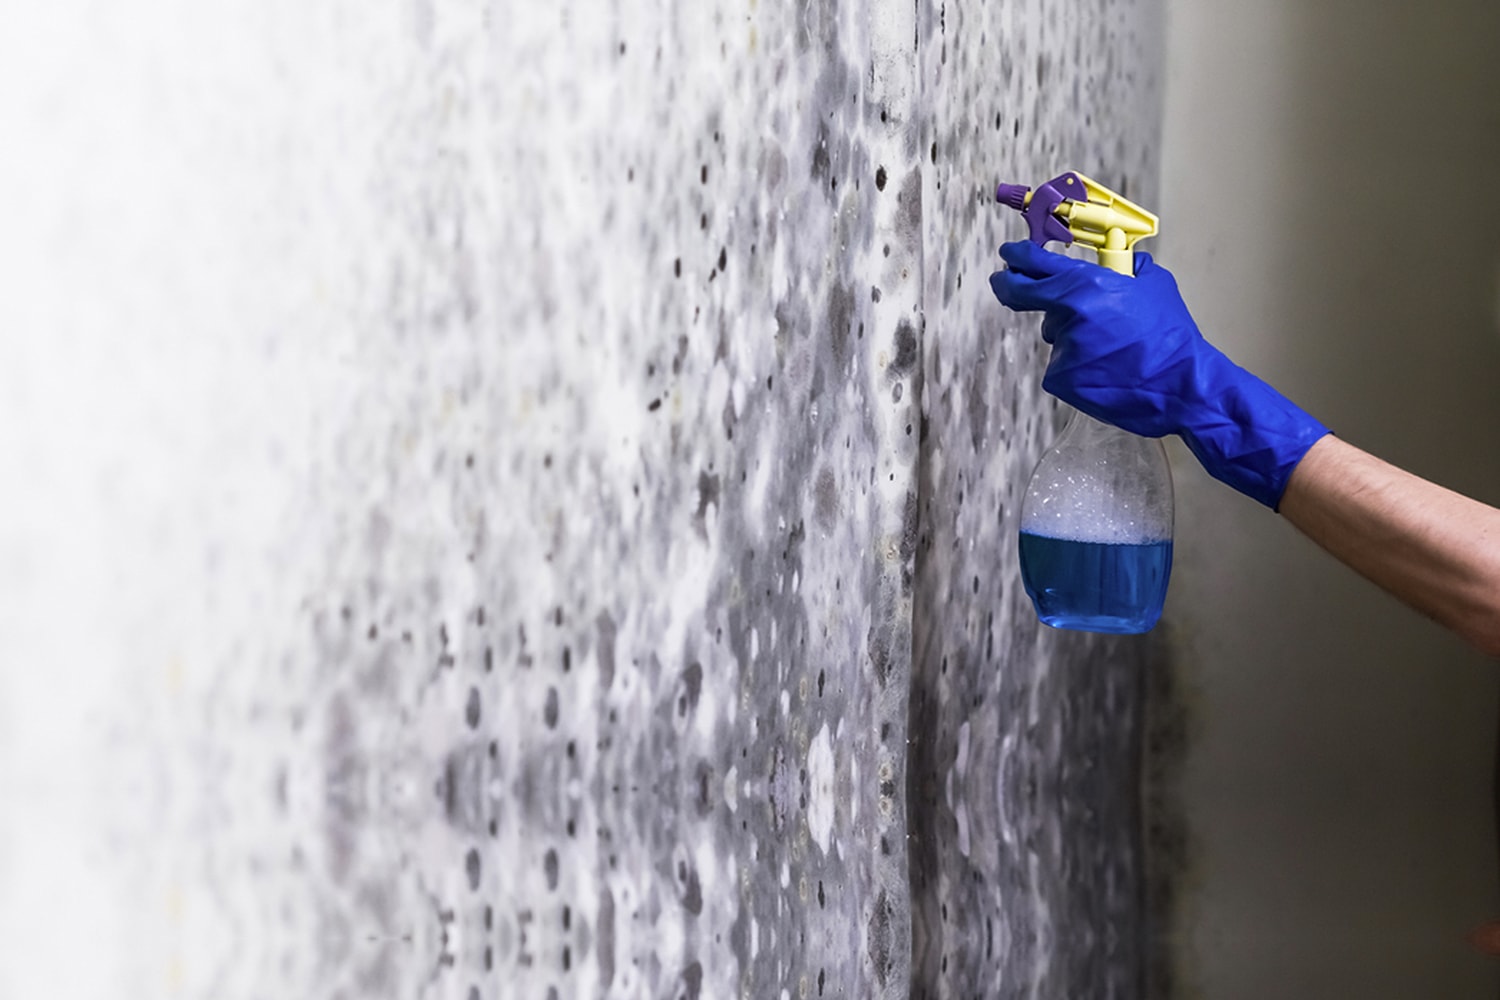 Способы применения медного купороса против грибка на стенах: как разбавить и наносить, техника безопасности